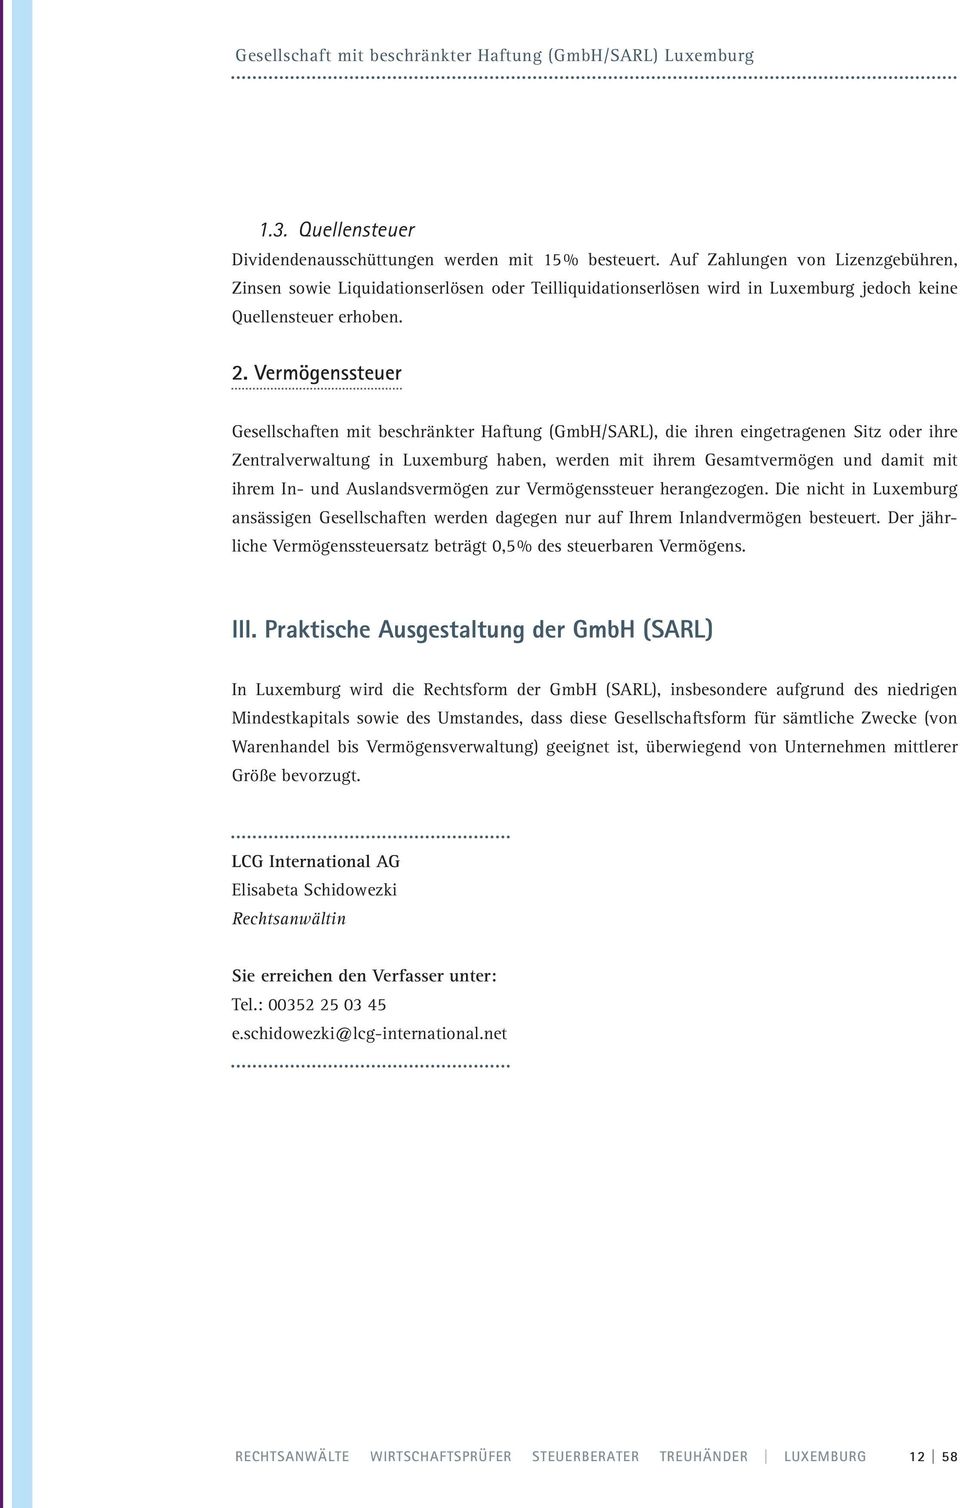 Vermögenssteuer Gesellschaften mit beschränkter Haftung (GmbH/SARL), die ihren eingetragenen Sitz oder ihre Zentralverwaltung in Luxemburg haben, werden mit ihrem Gesamtvermögen und damit mit ihrem